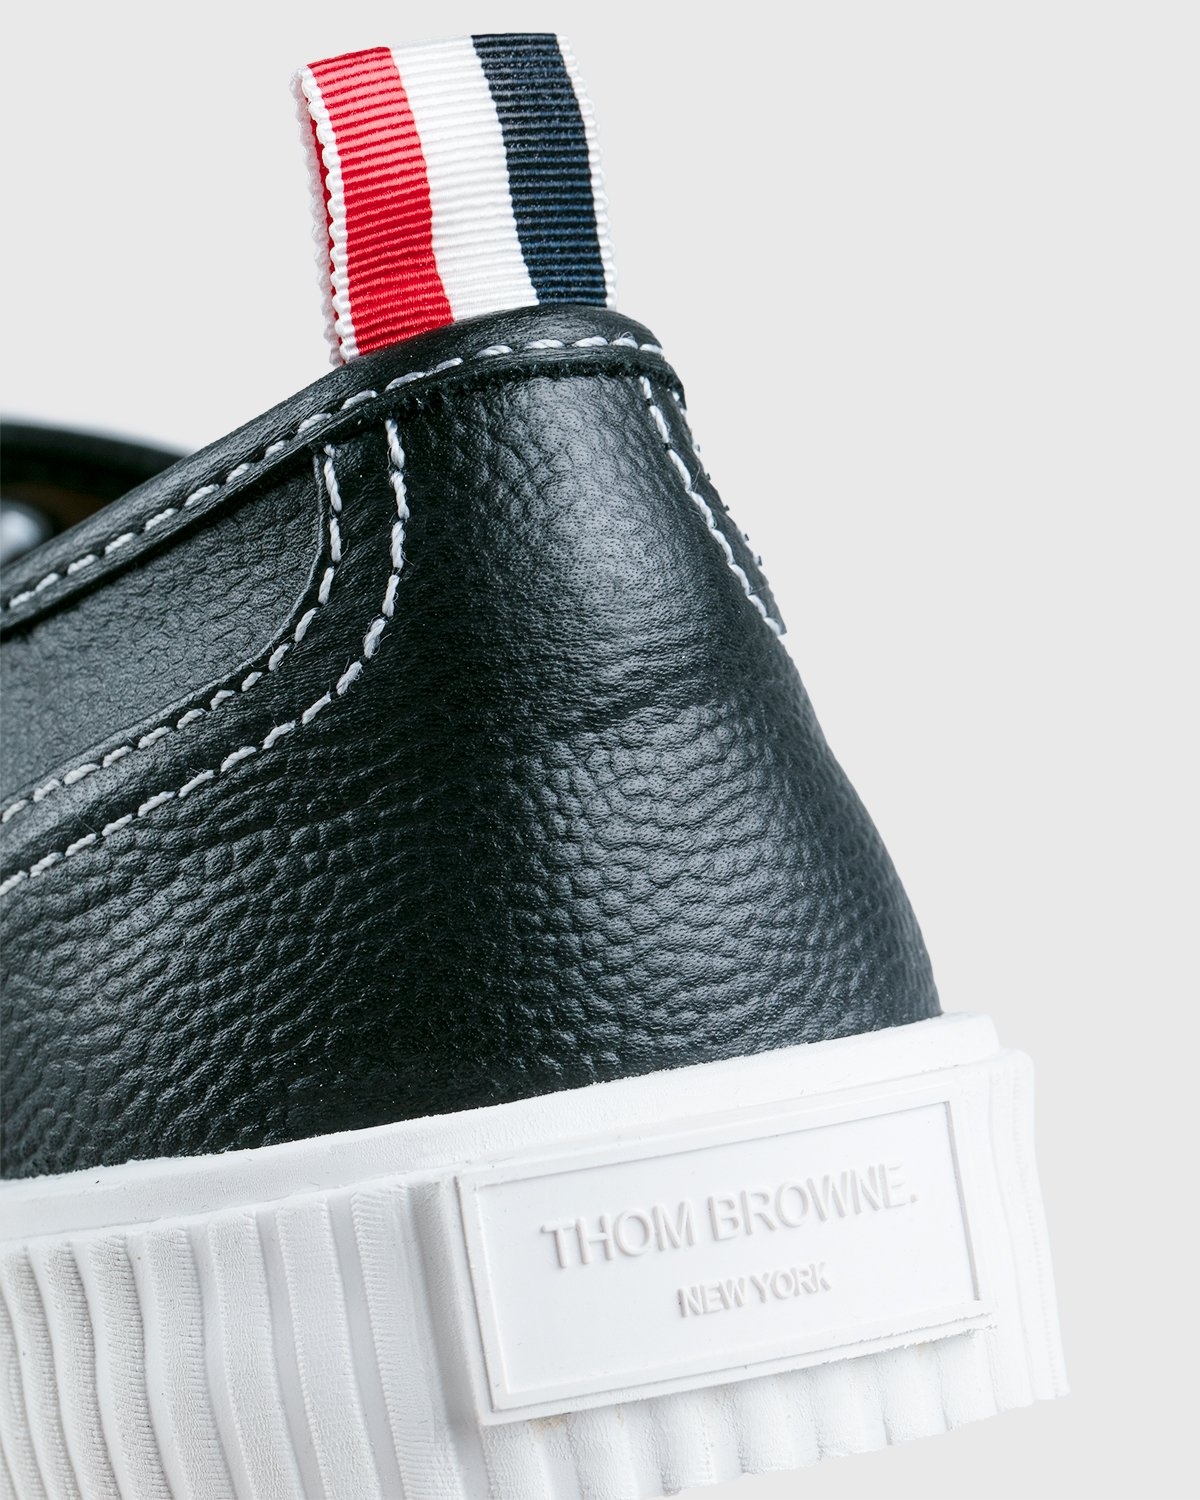 Thom Browne x Highsnobiety – Women's Heritage Sneaker Grey - Low Top Sneakers - Grey - Image 4